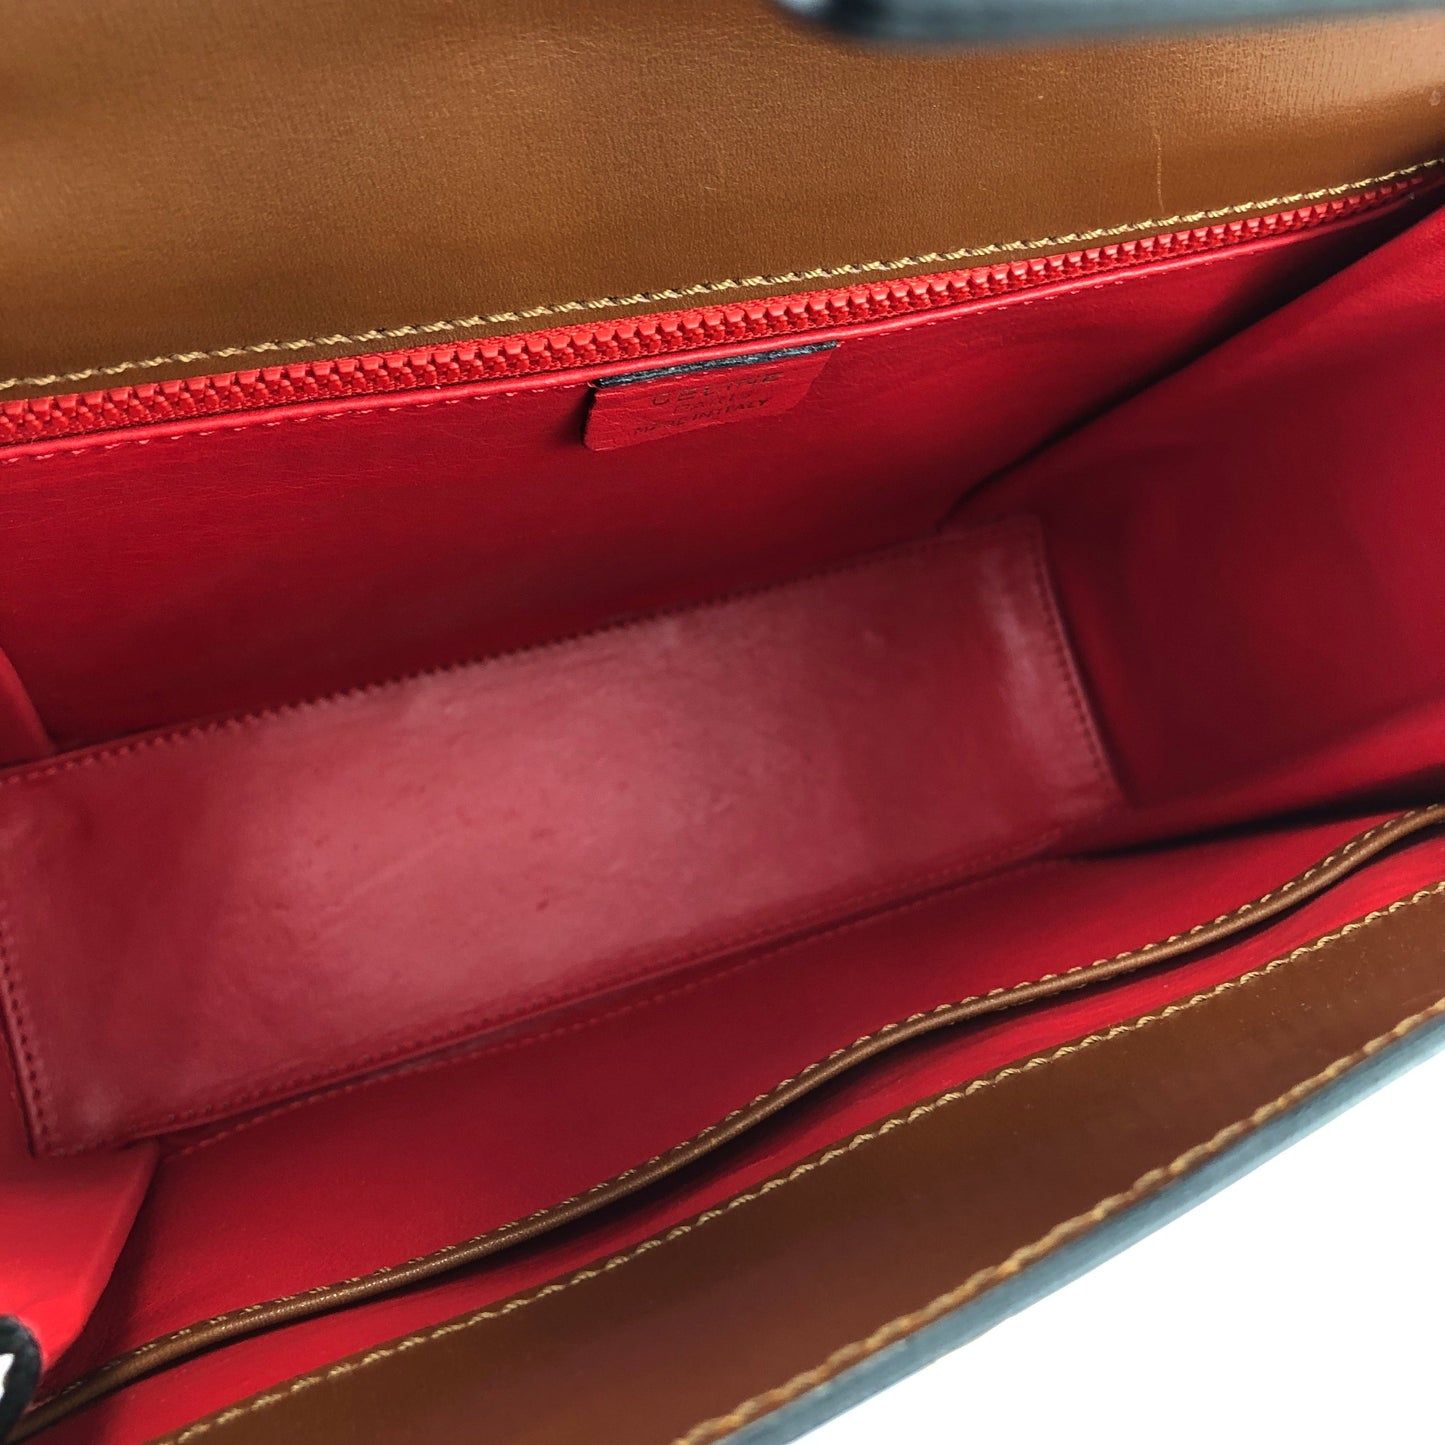 CELINE Gancini Box Handbag Crossbody Shoulder bag Brown Vintage Old Celine s48cfp